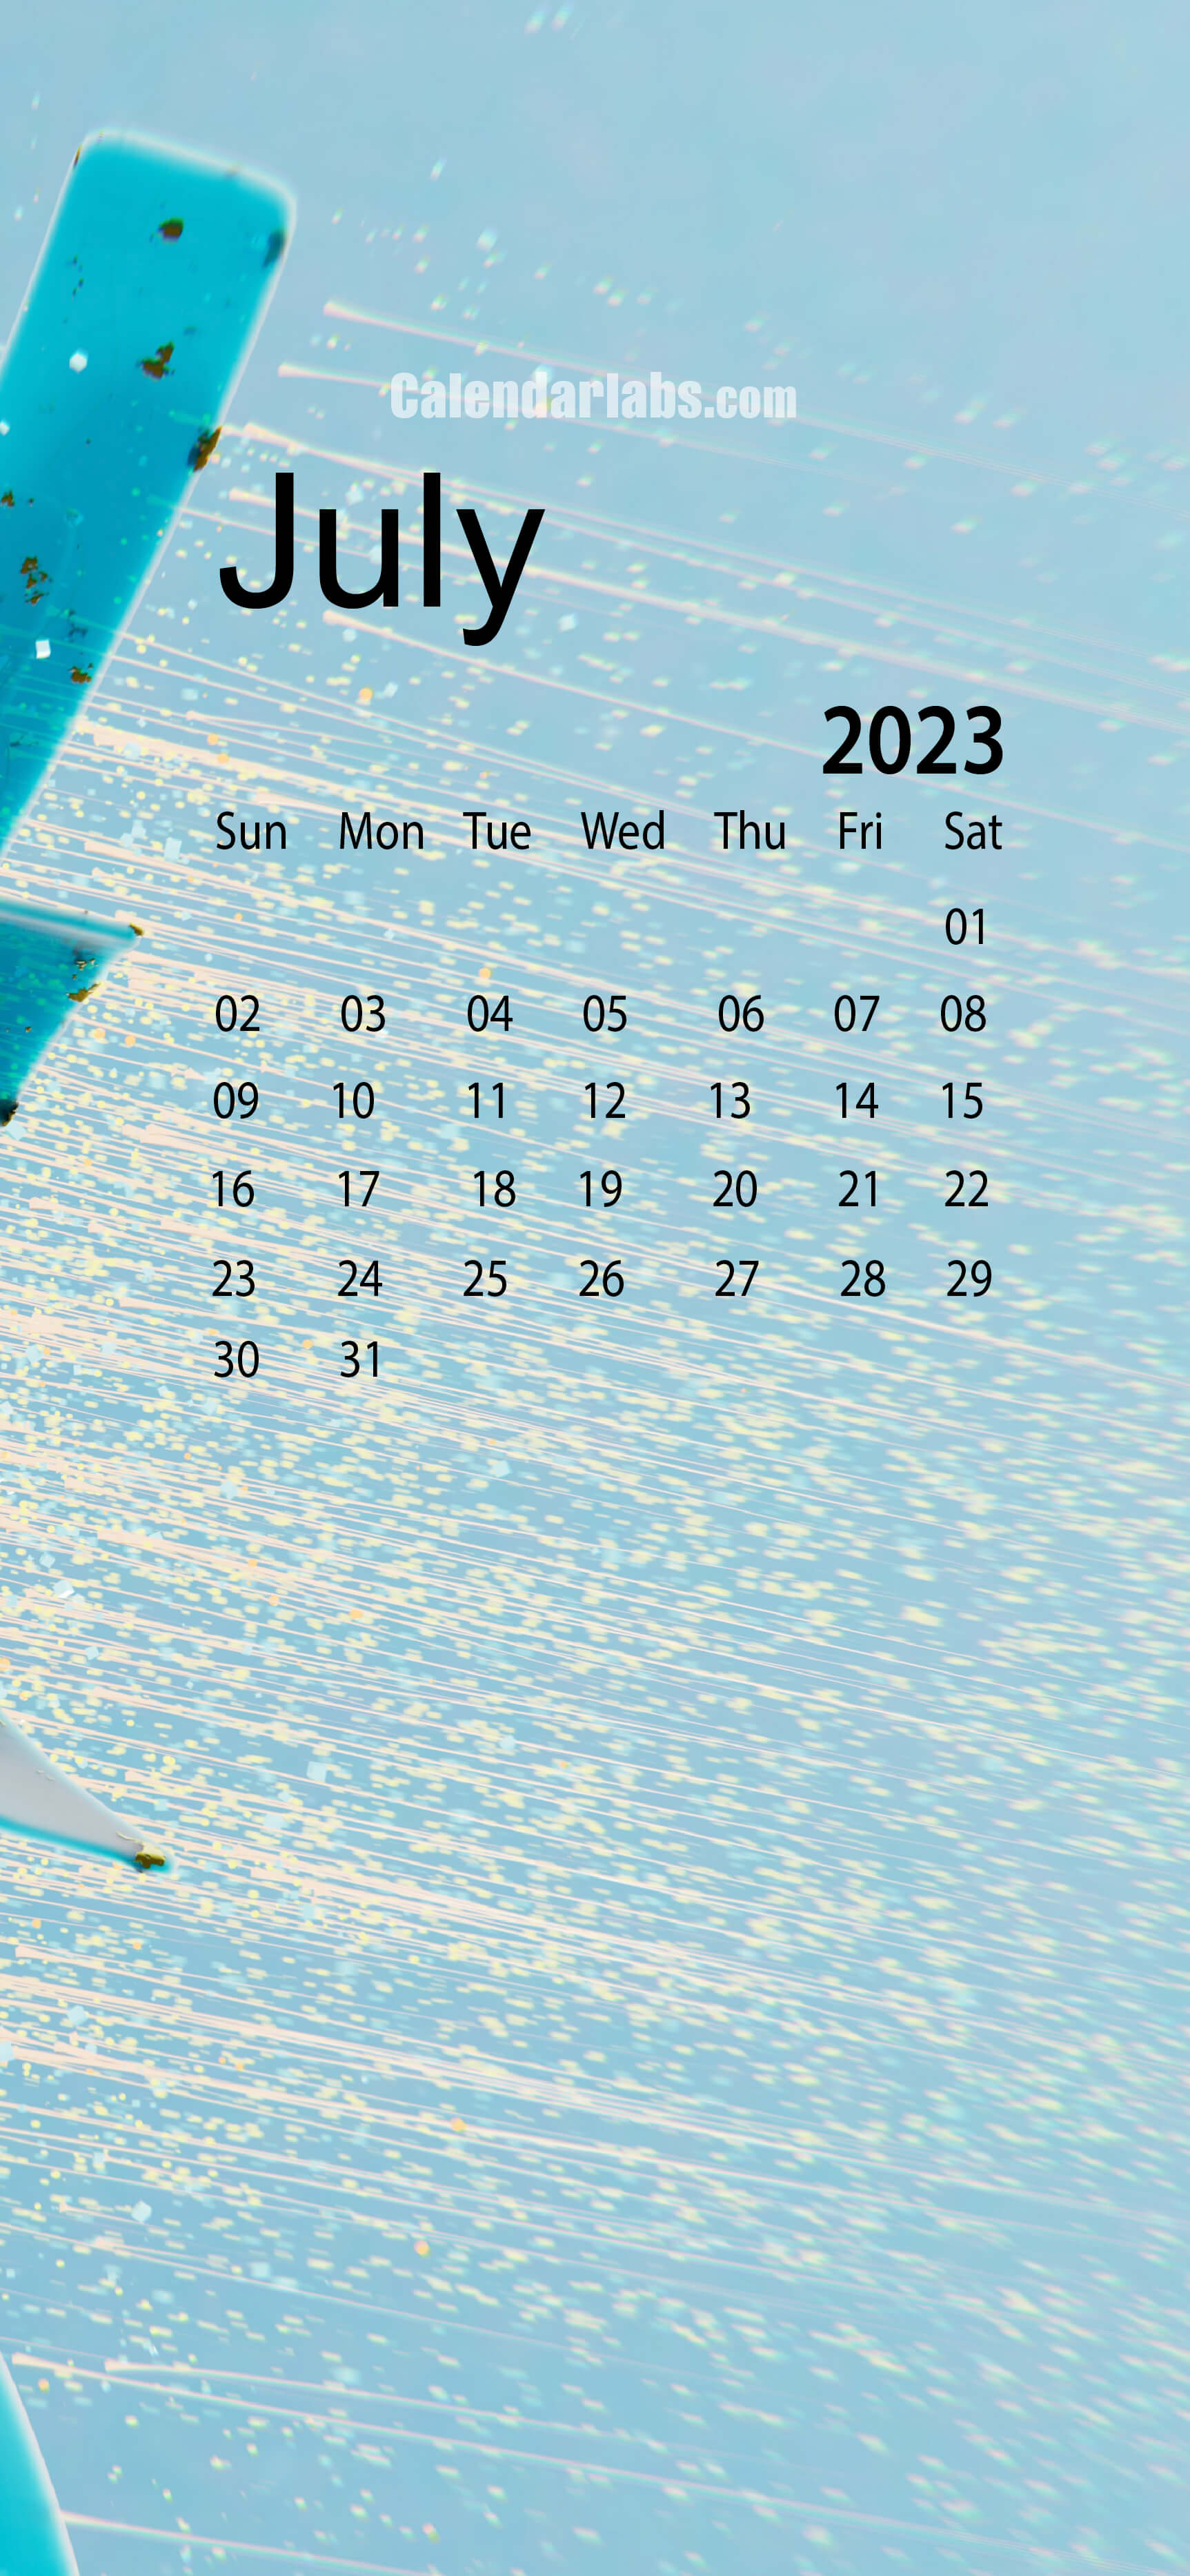 July 2023 Wall Calendar Wallpaper